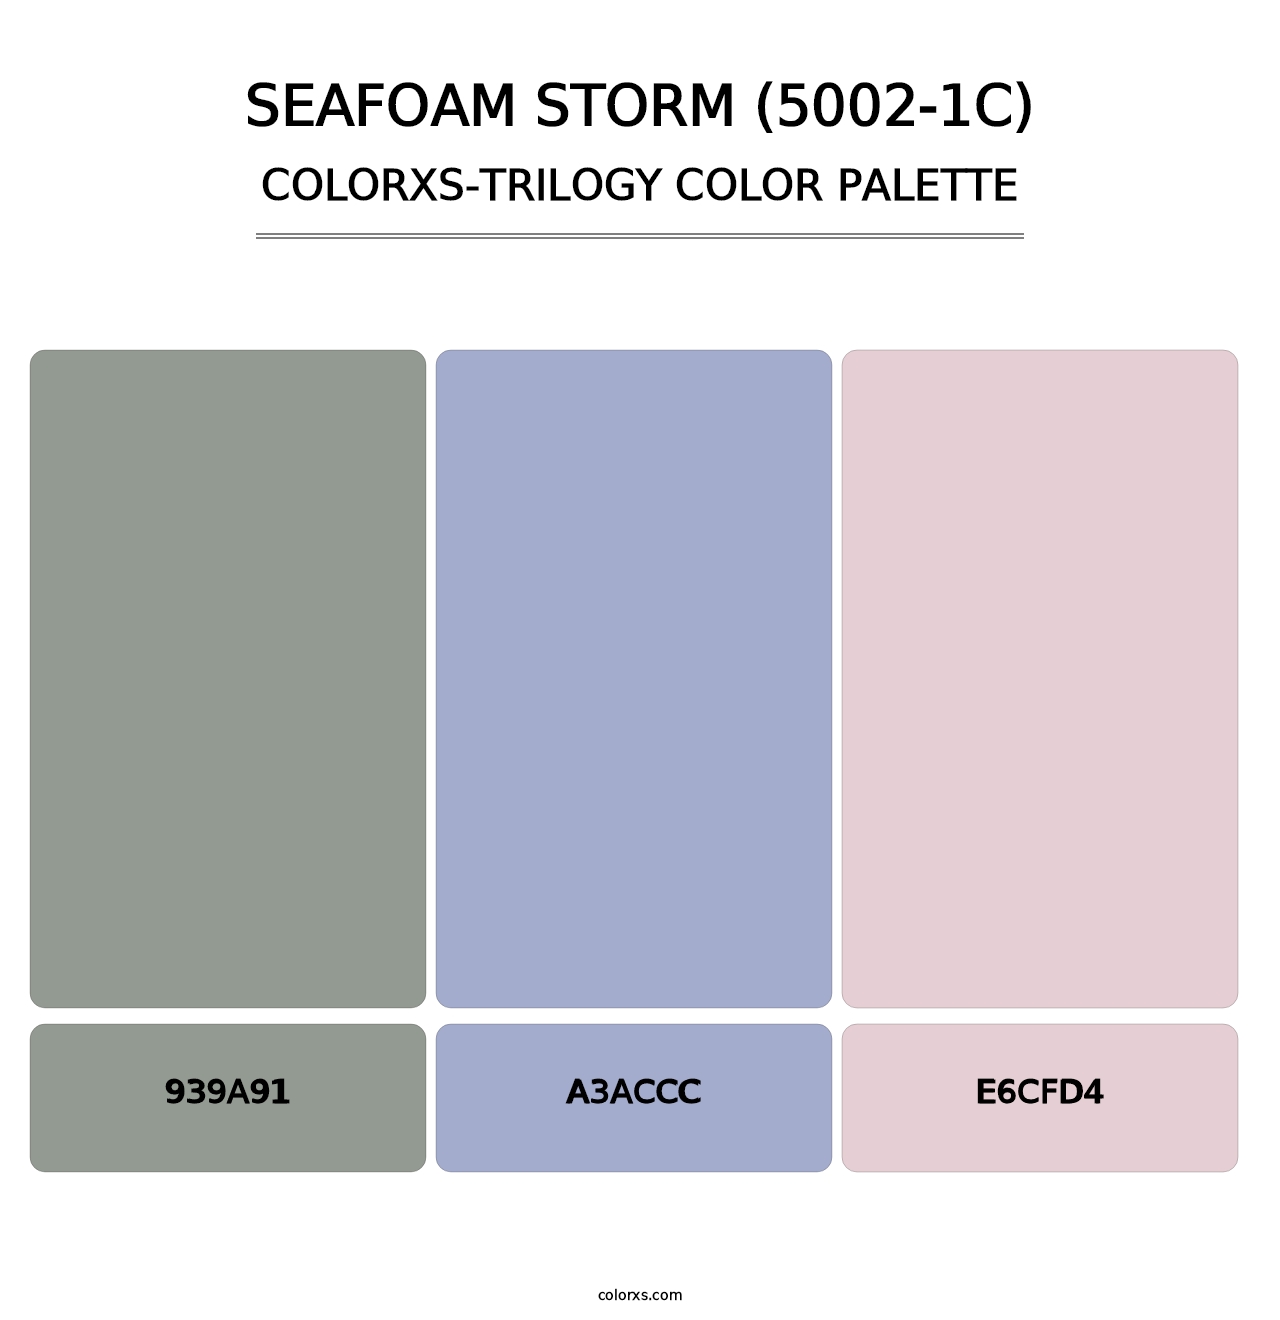 Seafoam Storm (5002-1C) - Colorxs Trilogy Palette